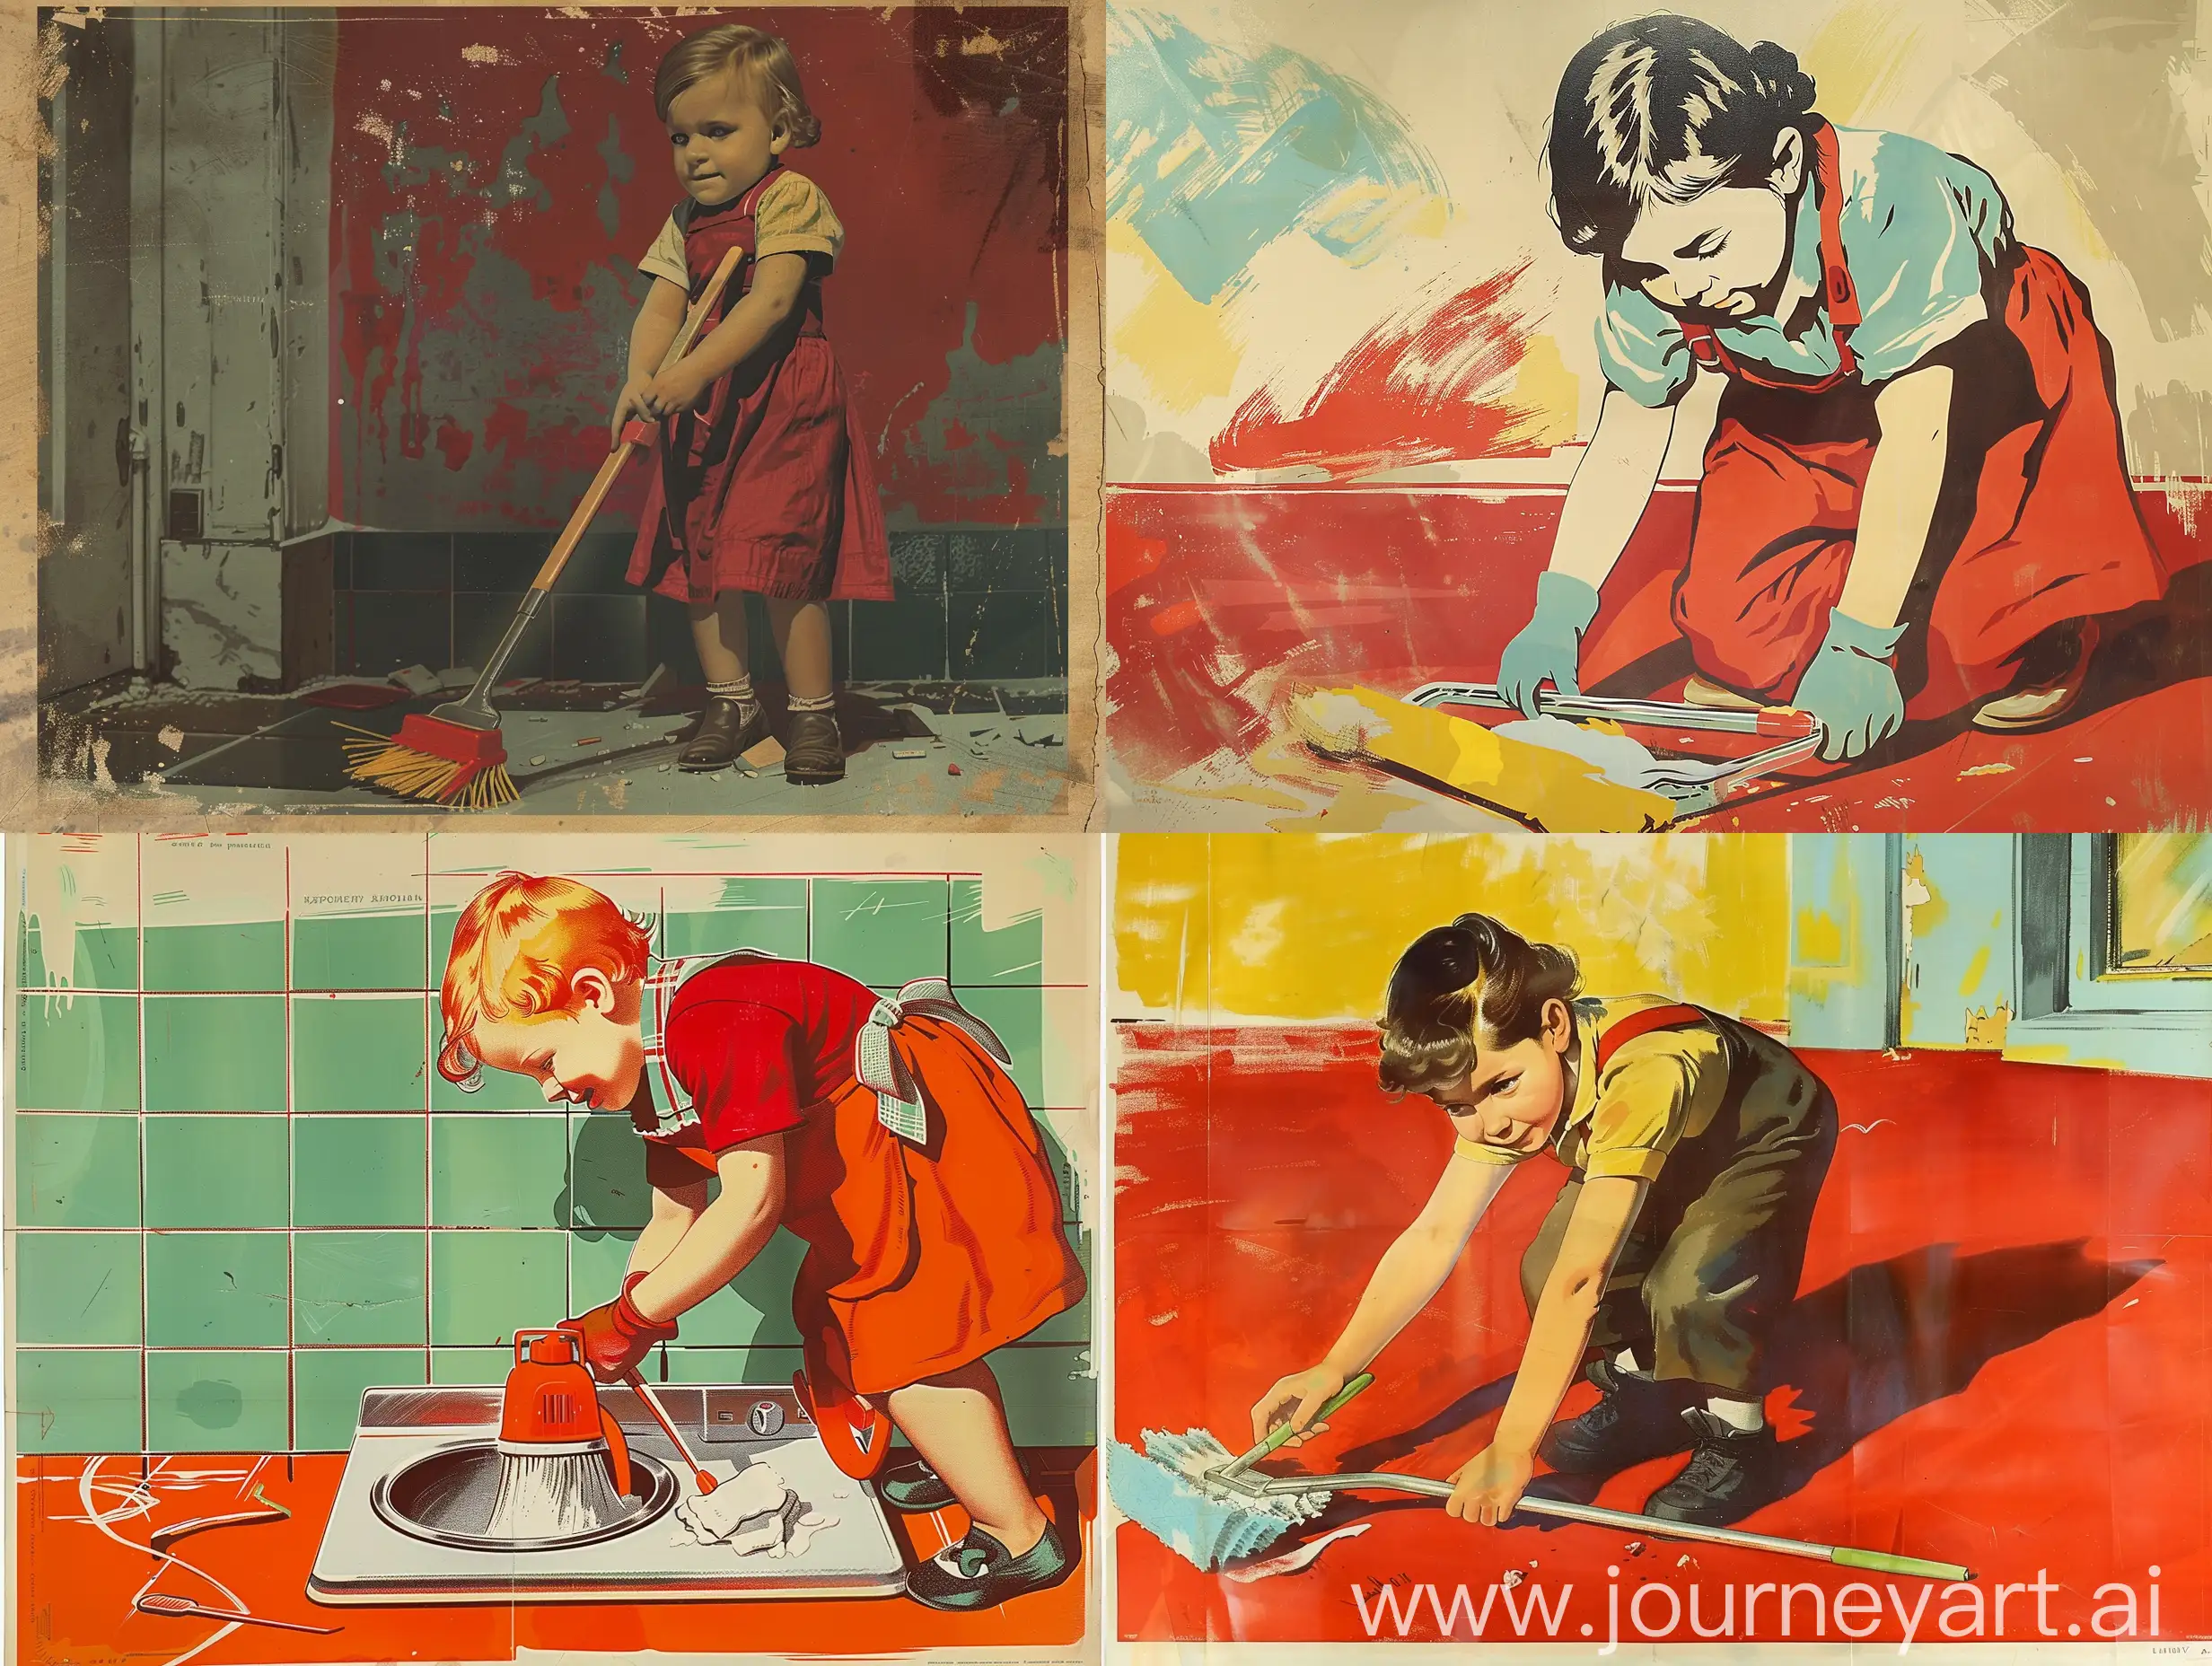 Ребенок занимающийся уборкой, в стиле советского плаката